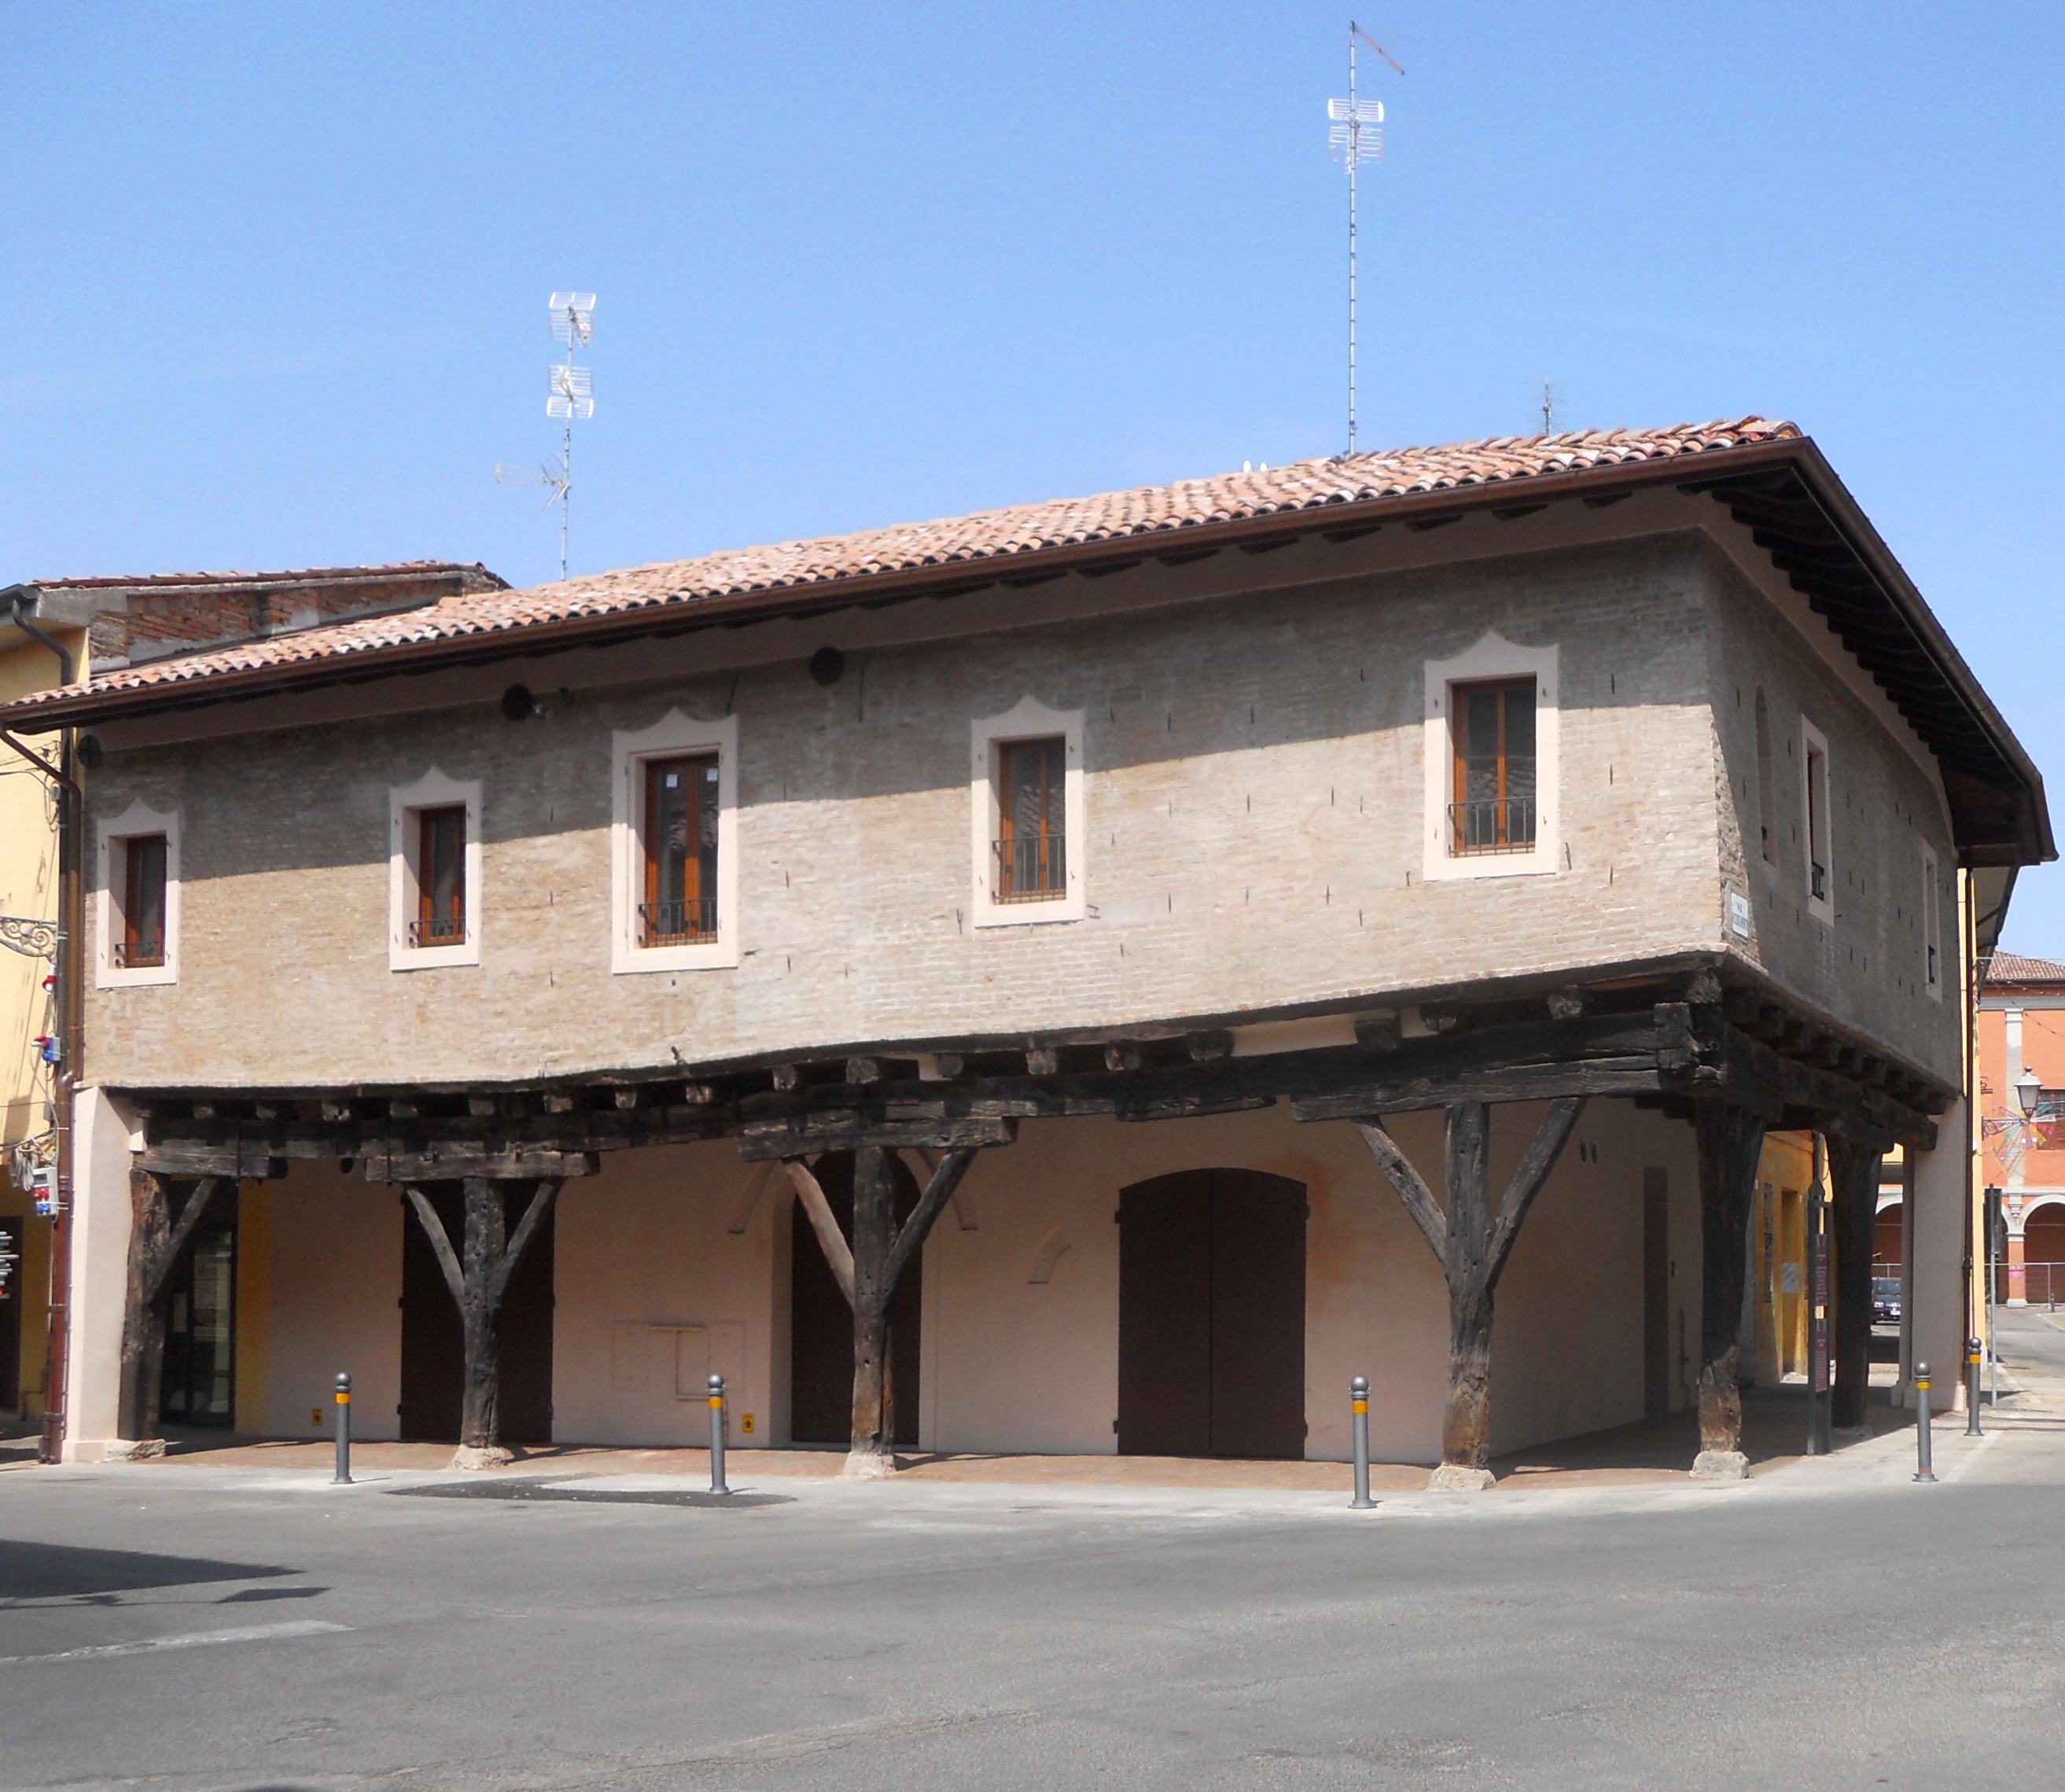 Restauro e consolidamento di edificio lesionato dal sisma 2012 nel comune di Pieve di Cento - ITON SRL